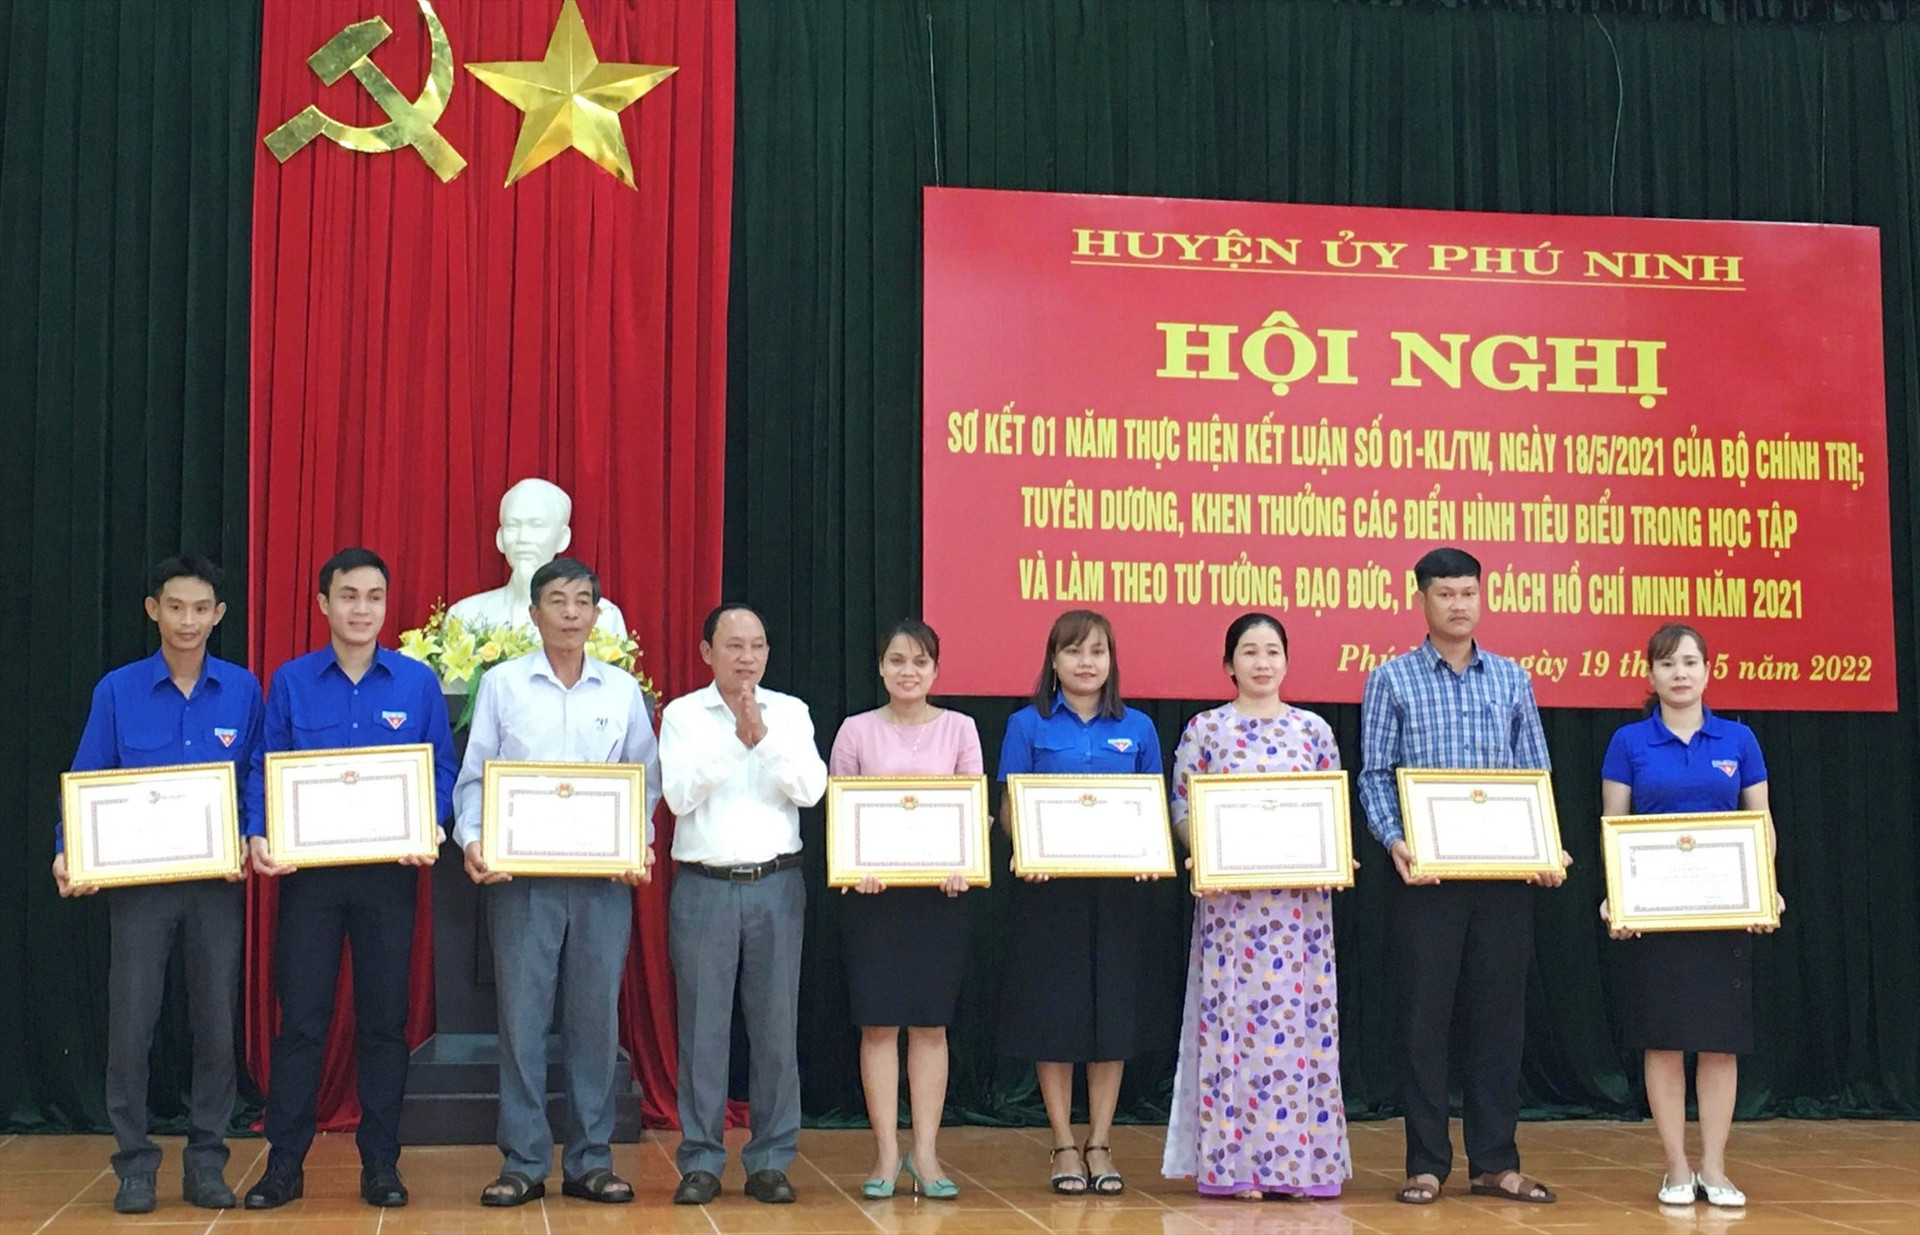 1.2.Huyện ủy Phú Ninh khen thưởng cho các tập thể tiêu biểu trong học tập và làm theo tư tưởng, đạo đức, phong cách Hồ Chí Minh năm 2021.